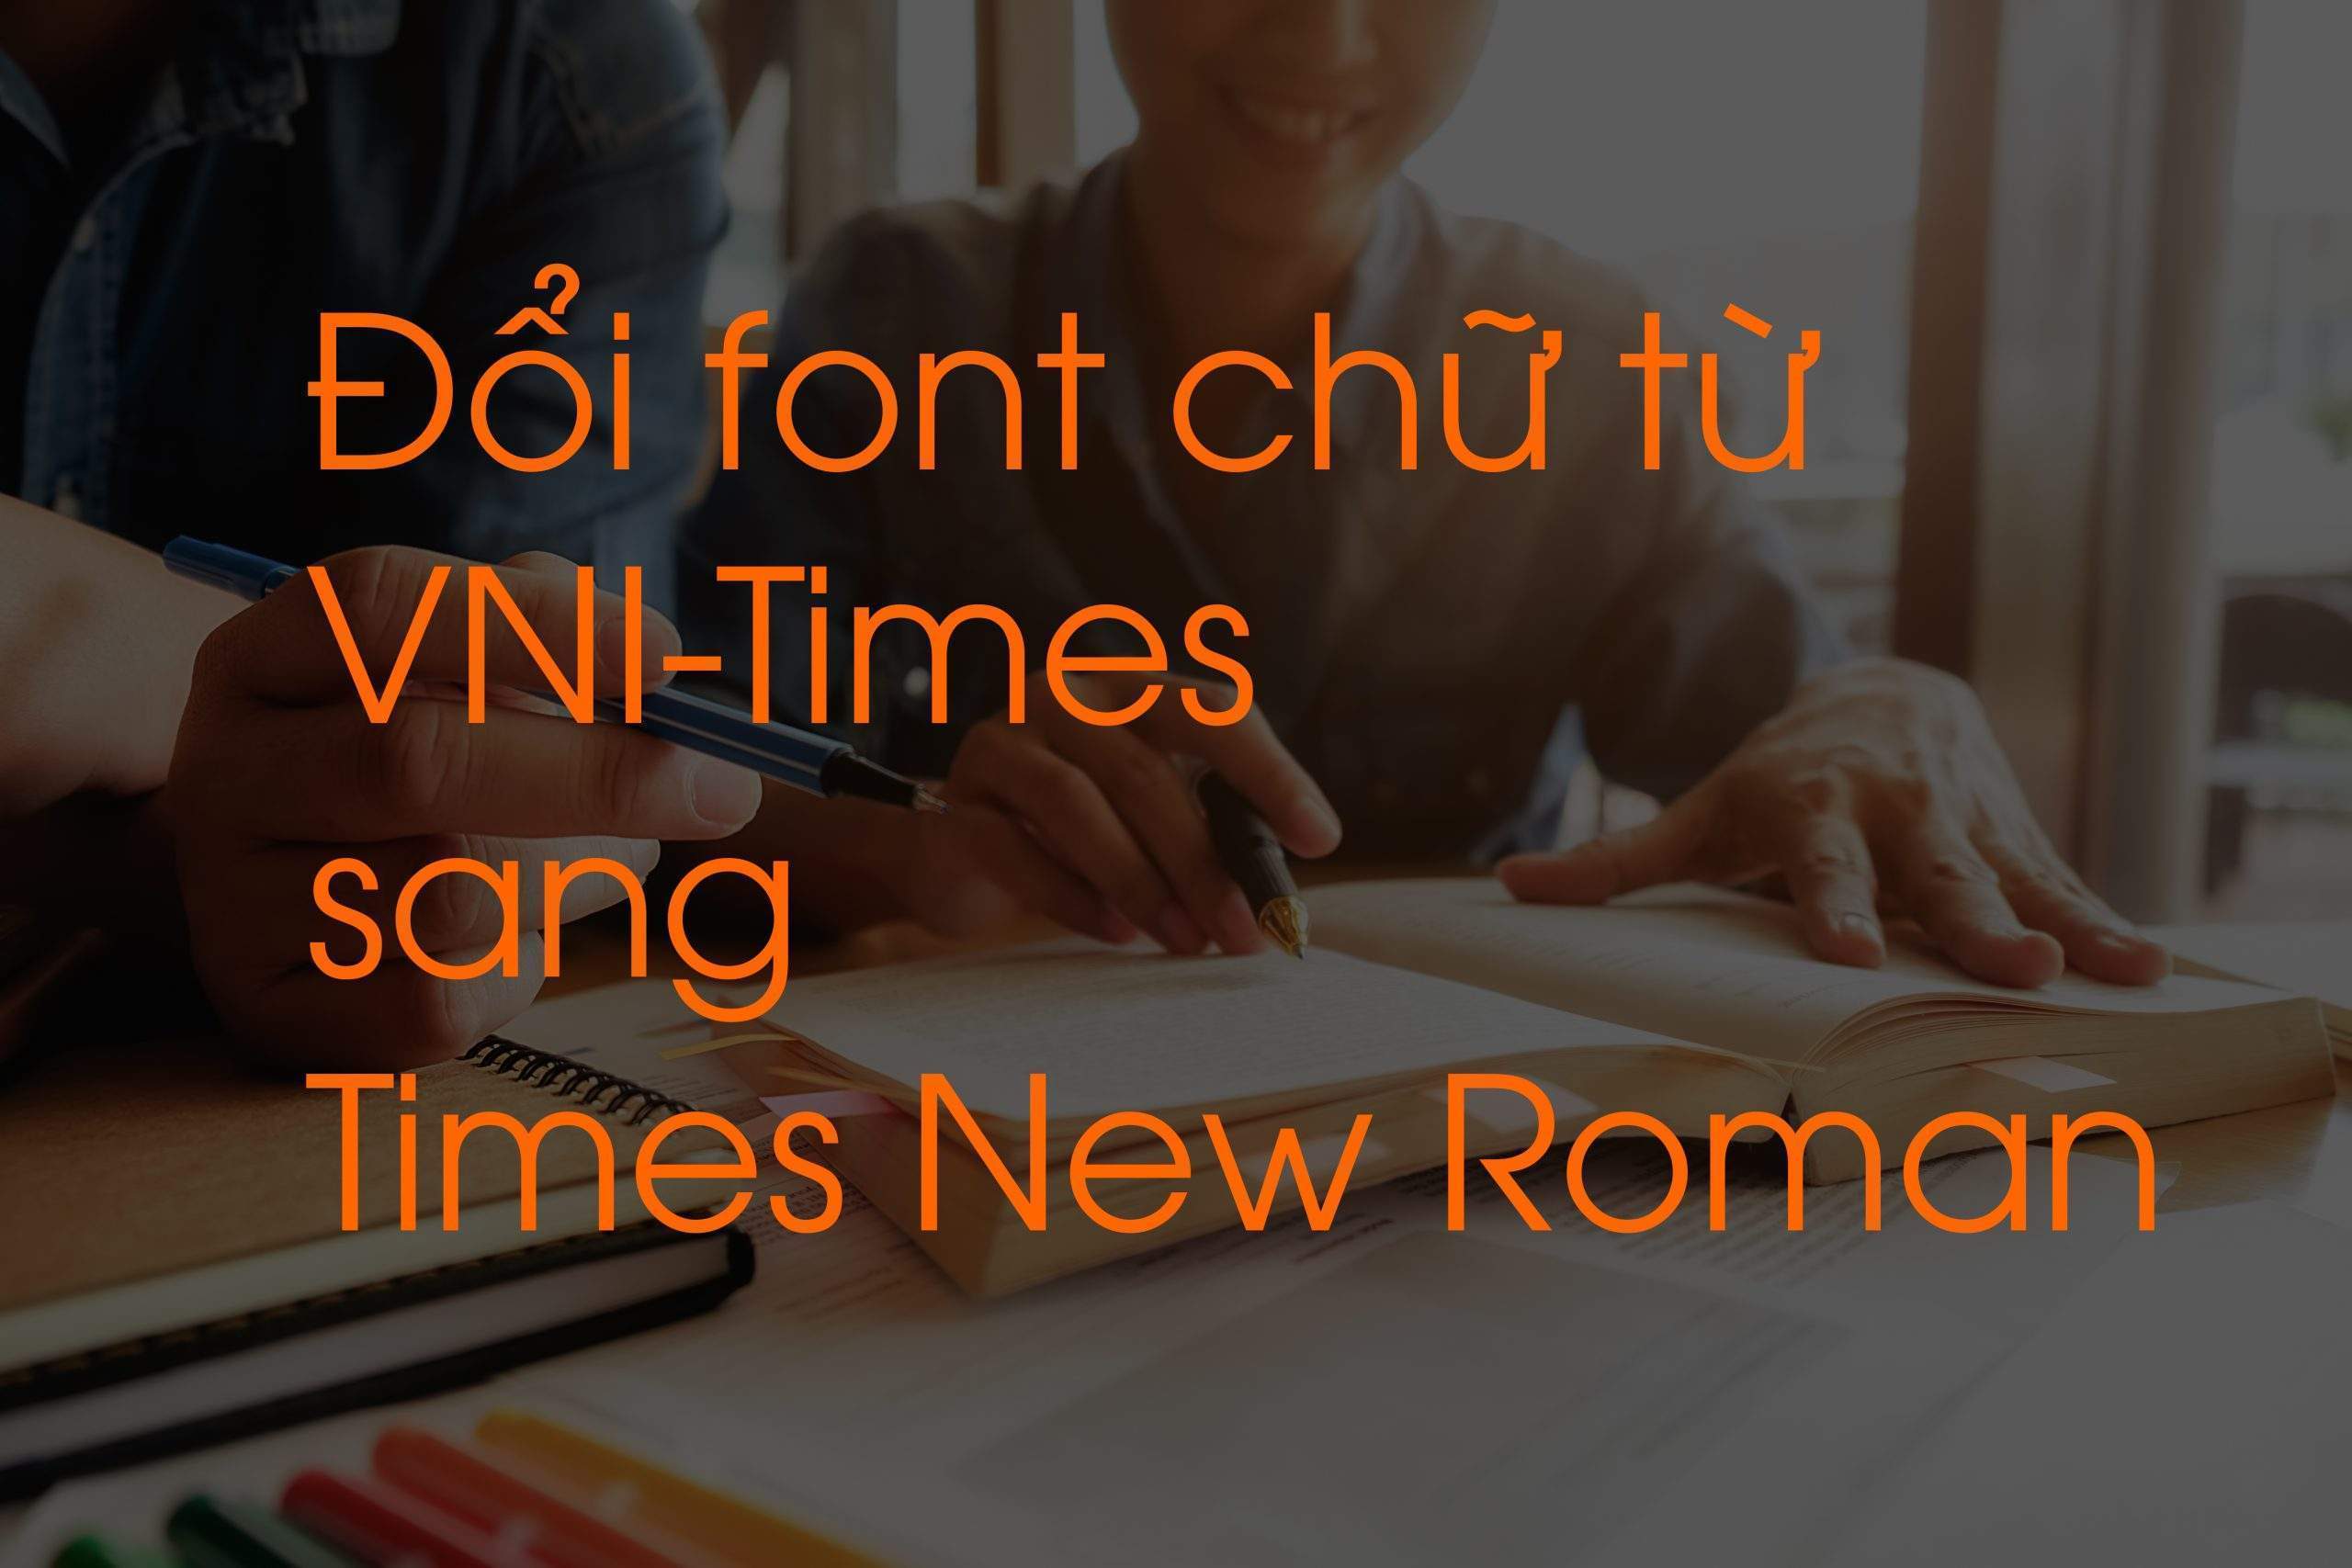 Đổi font chữ từ VNI-Times sang Times New Roman